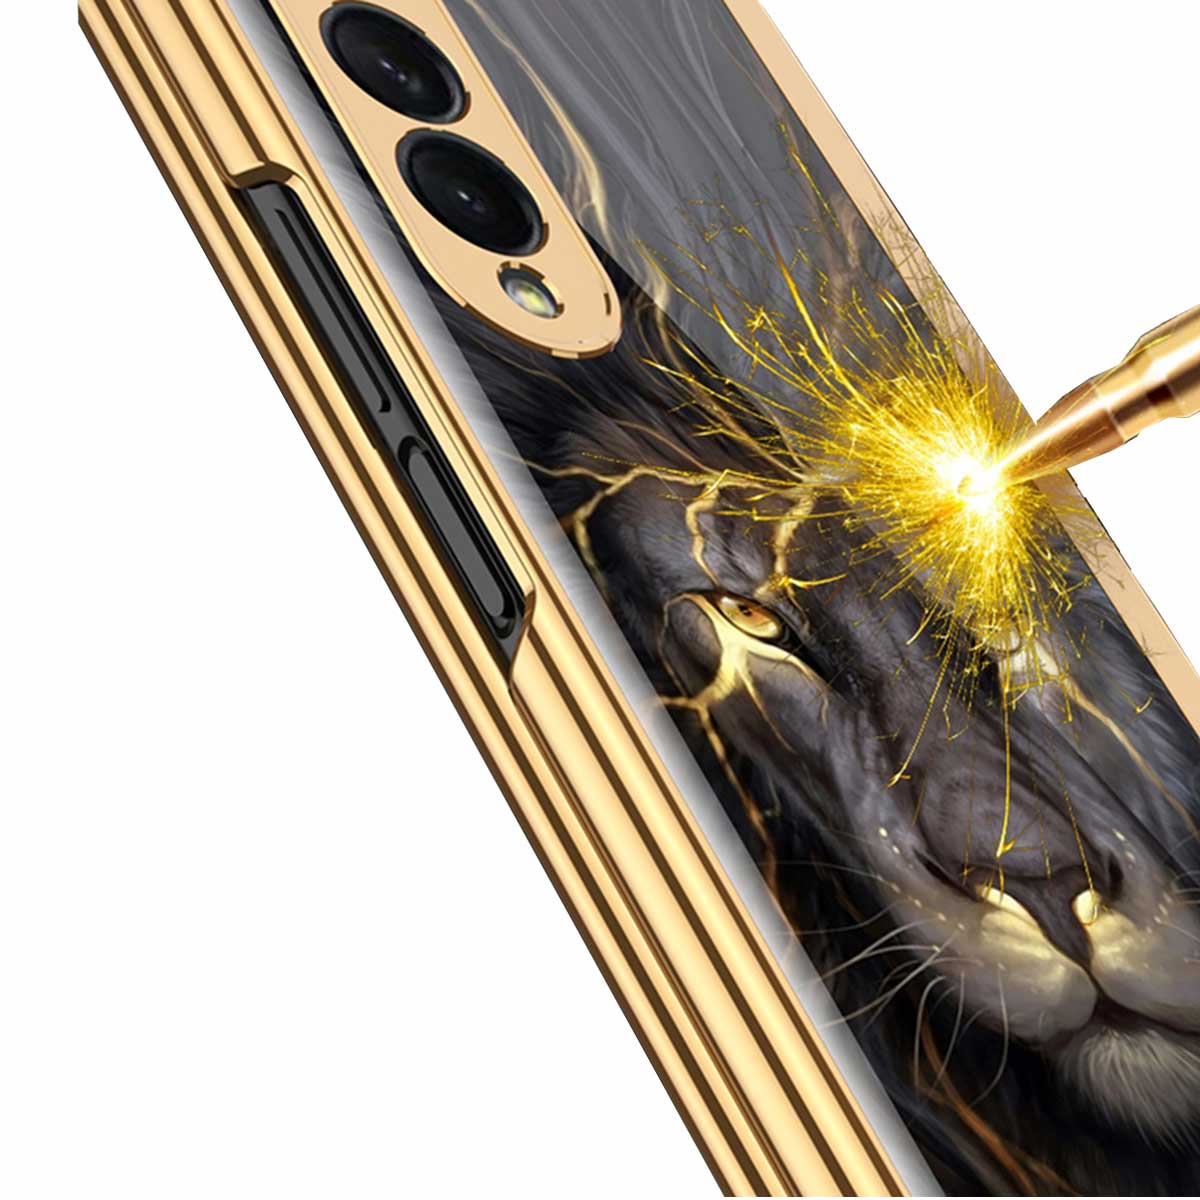 Galvanisierende Druck WIGENTO Goldene mit Backcover, Flügel, Hülle Kunststoff Galaxy Schwarz 5G, Fold3 Samsung, Z